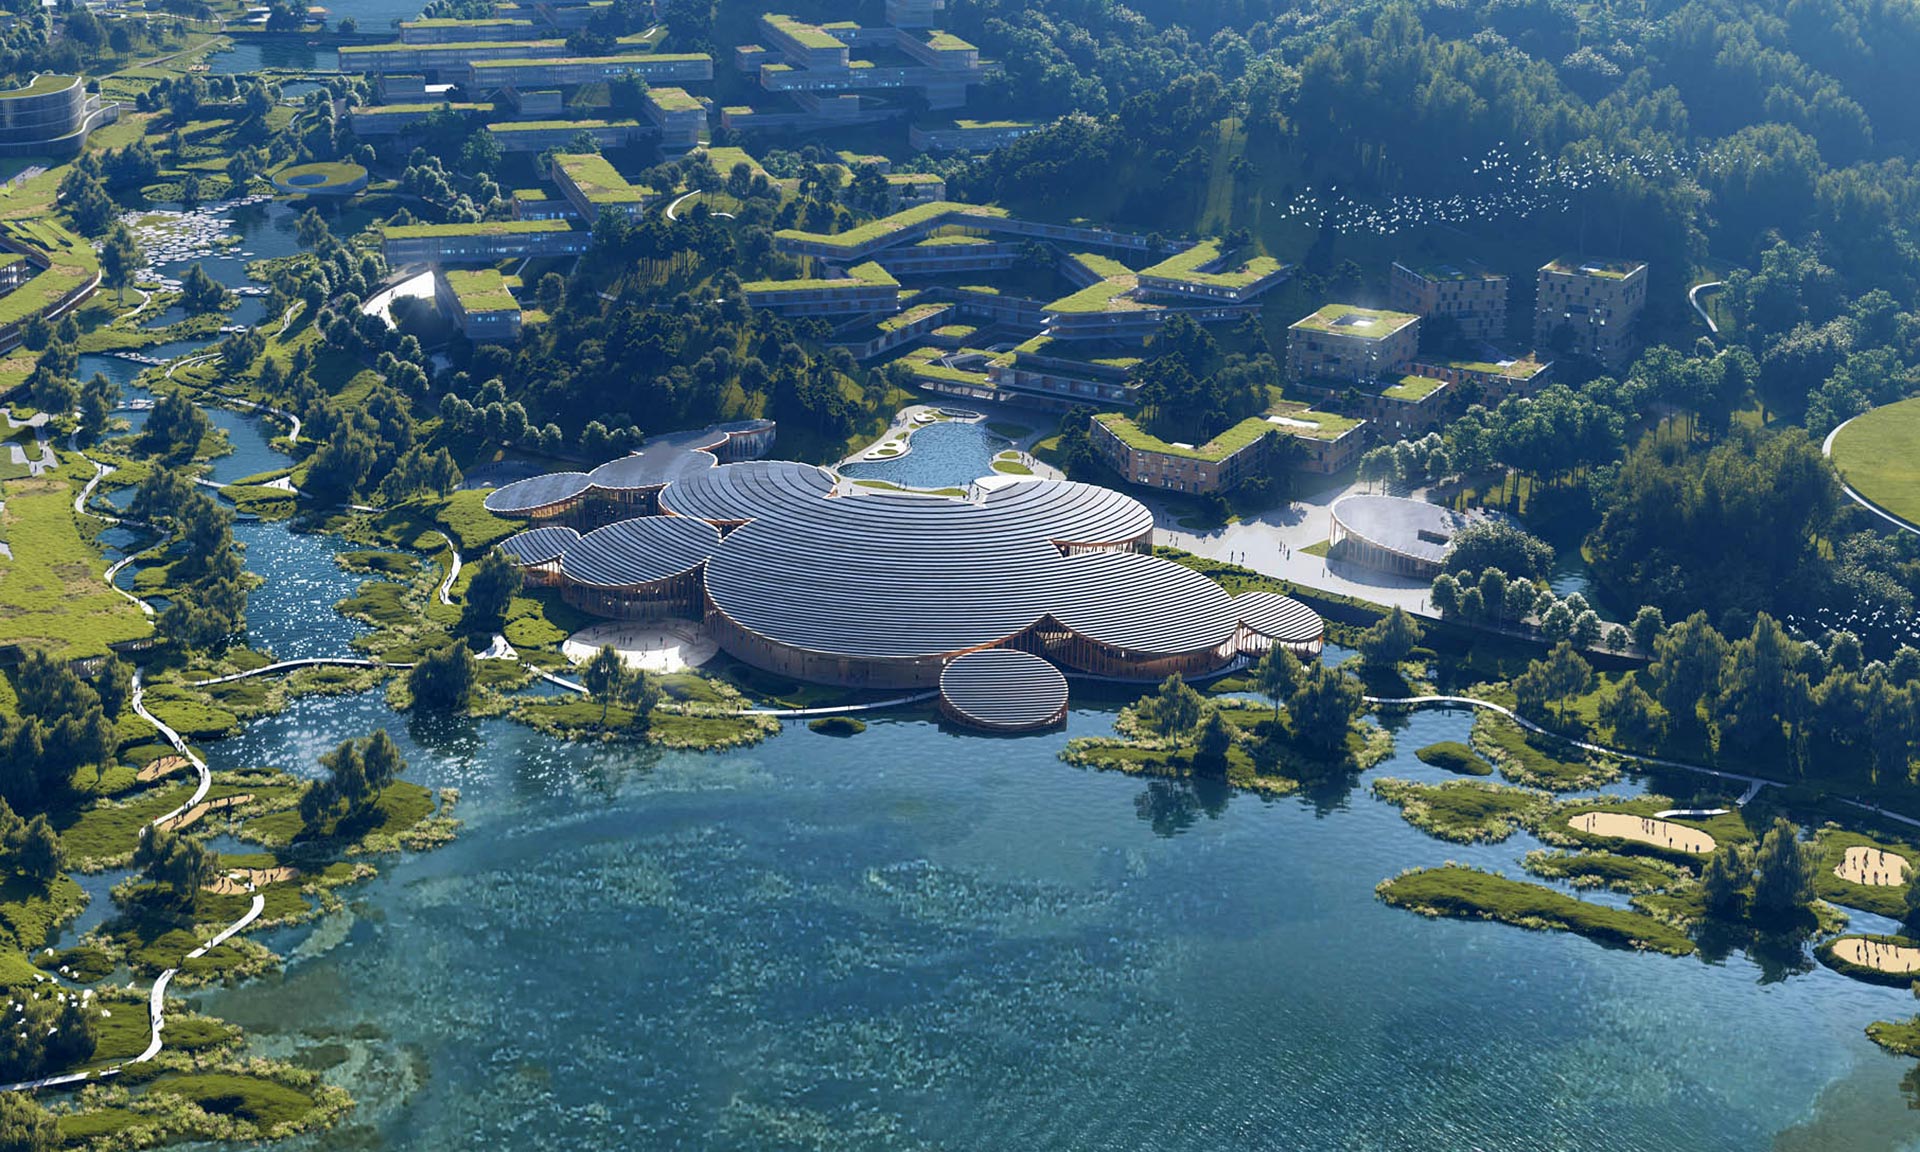 Mecanoo navrhlo na okraj vodní nádrže vědecké údolí Guangming s centrální dřevěnou stavbou z kruhů